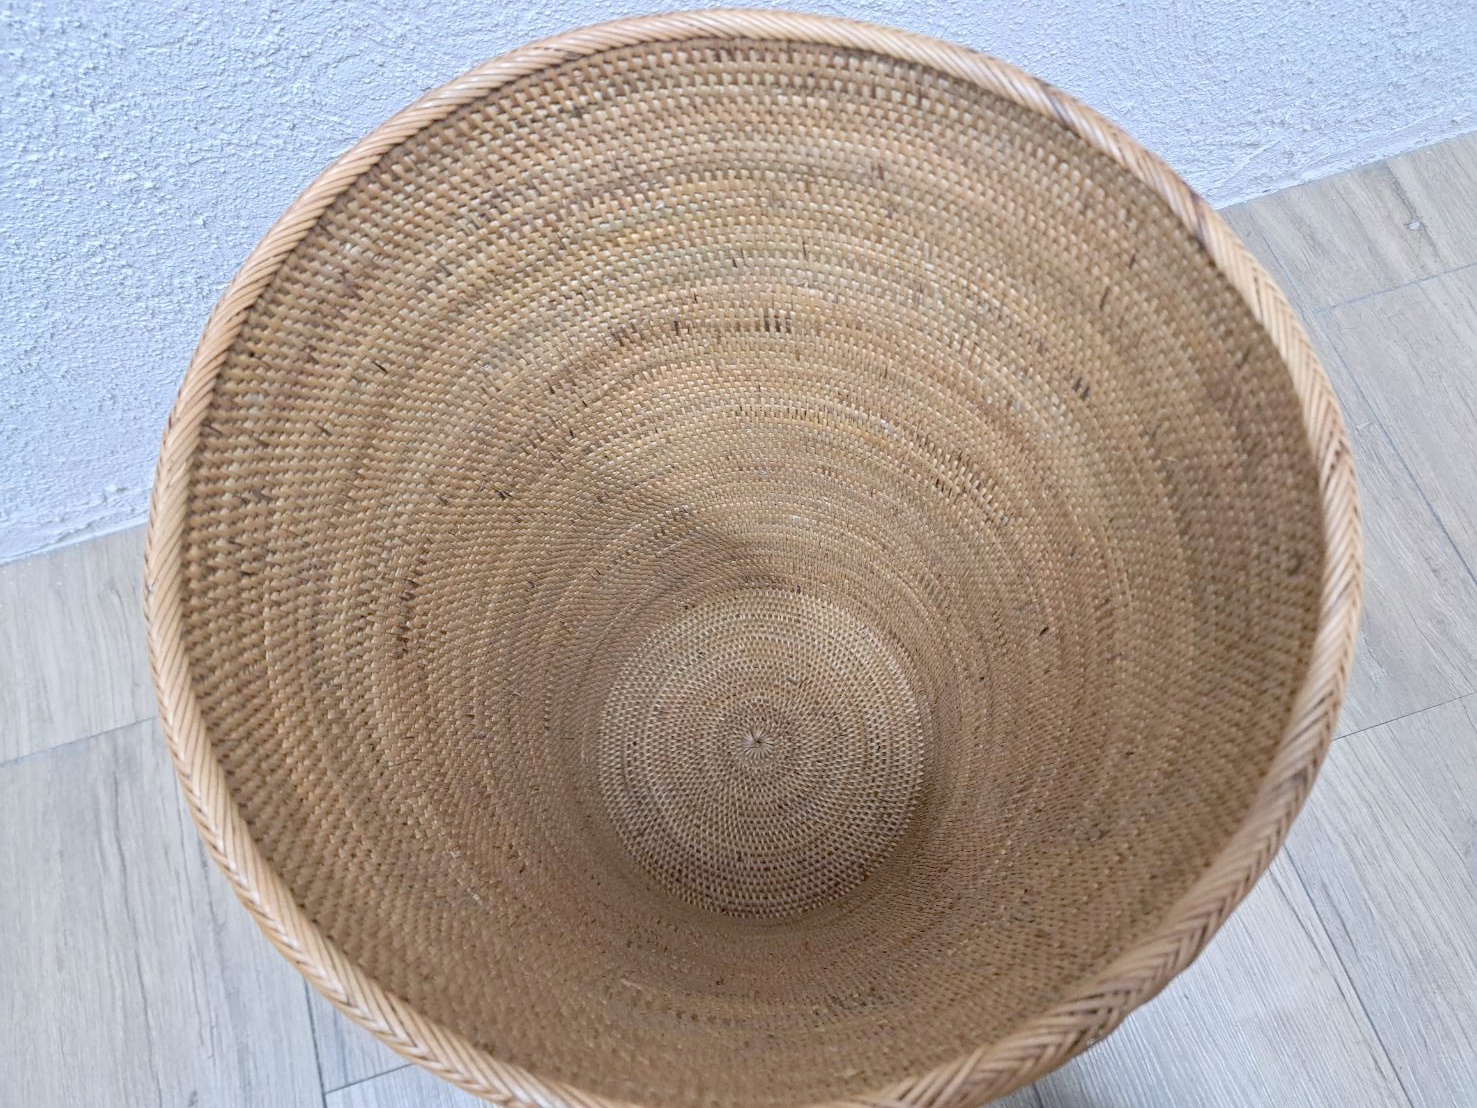 アタ製 バケツ バスケット 鉢カバー ランドリー 収納 ごみ箱 ダストボックス インテリア  籠 ナチュラル バリ島